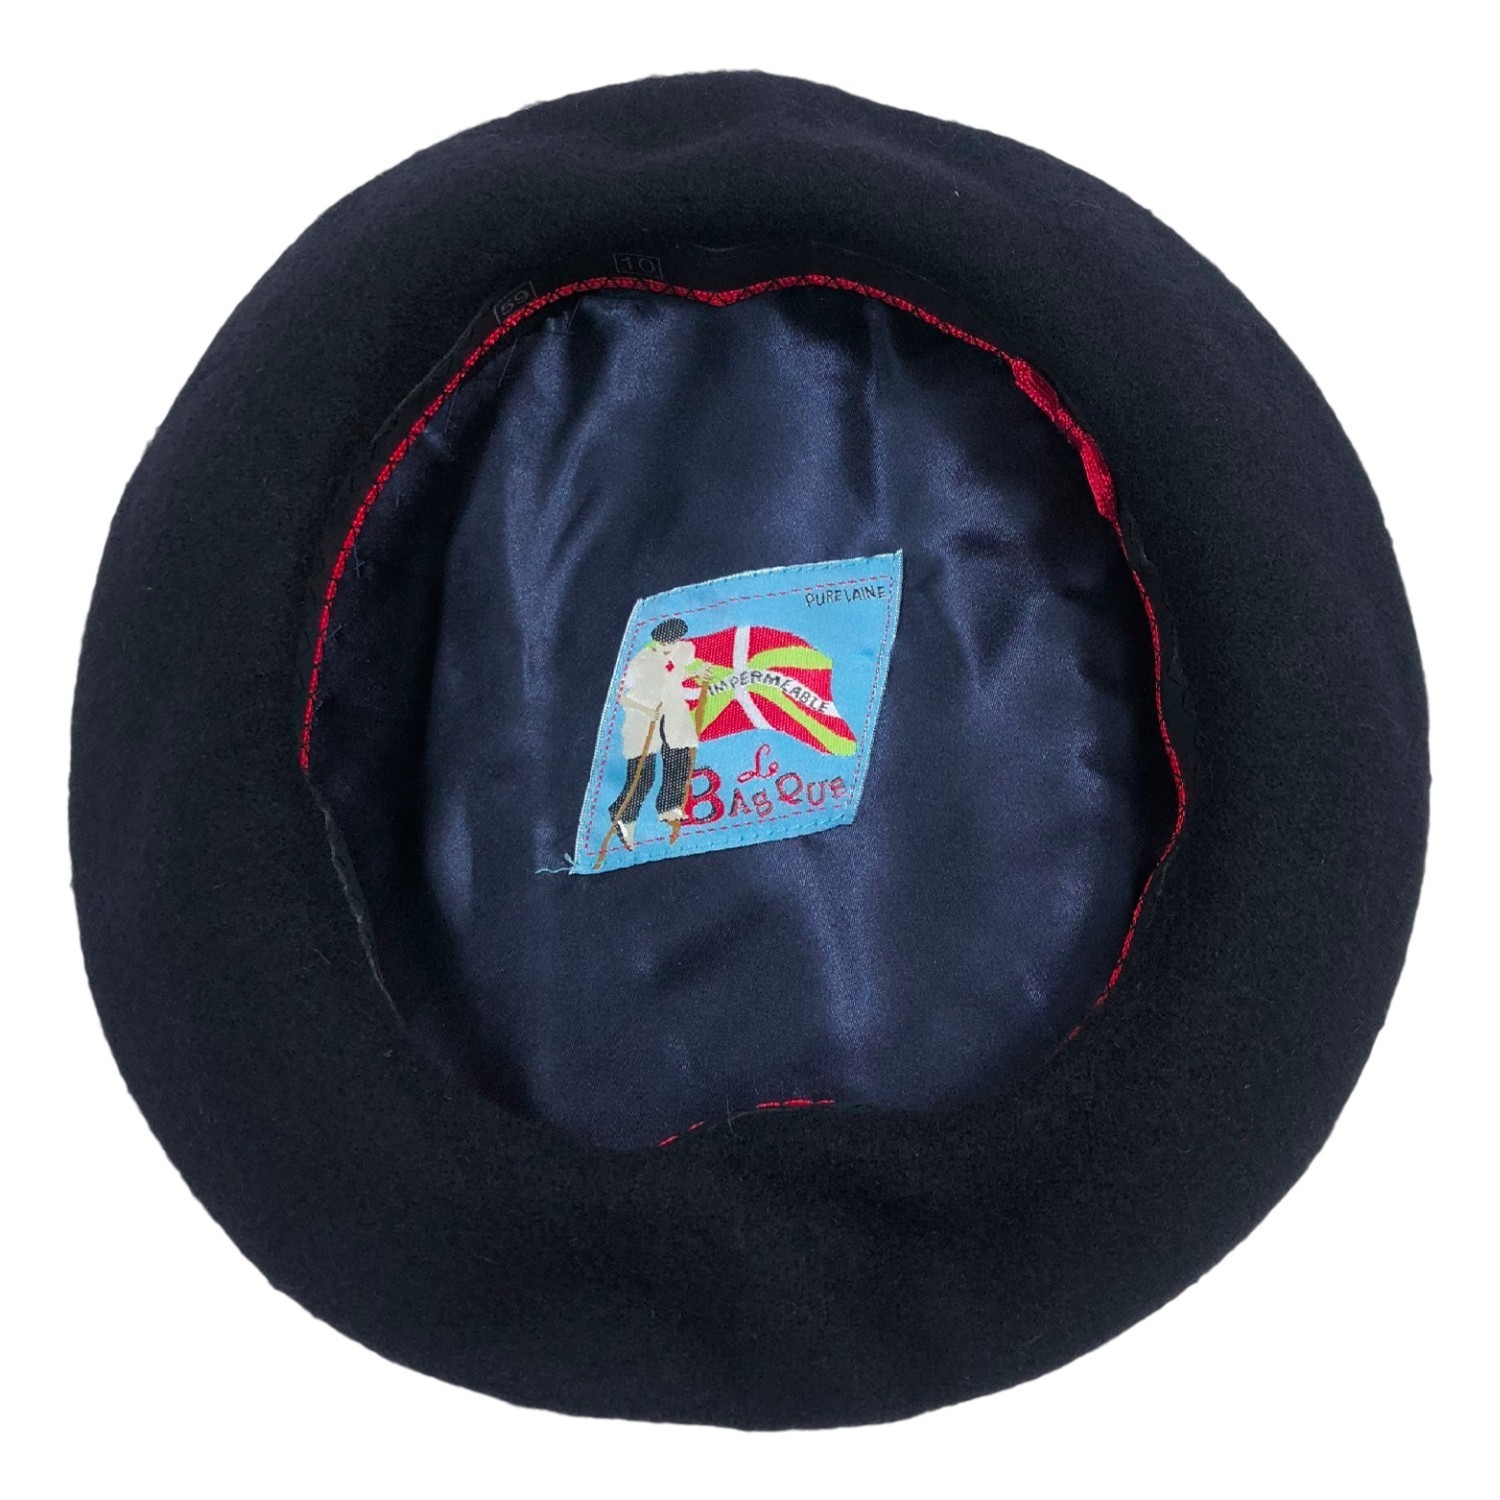 Achetez la véritable casquette béret basque - Casquette du berger basque